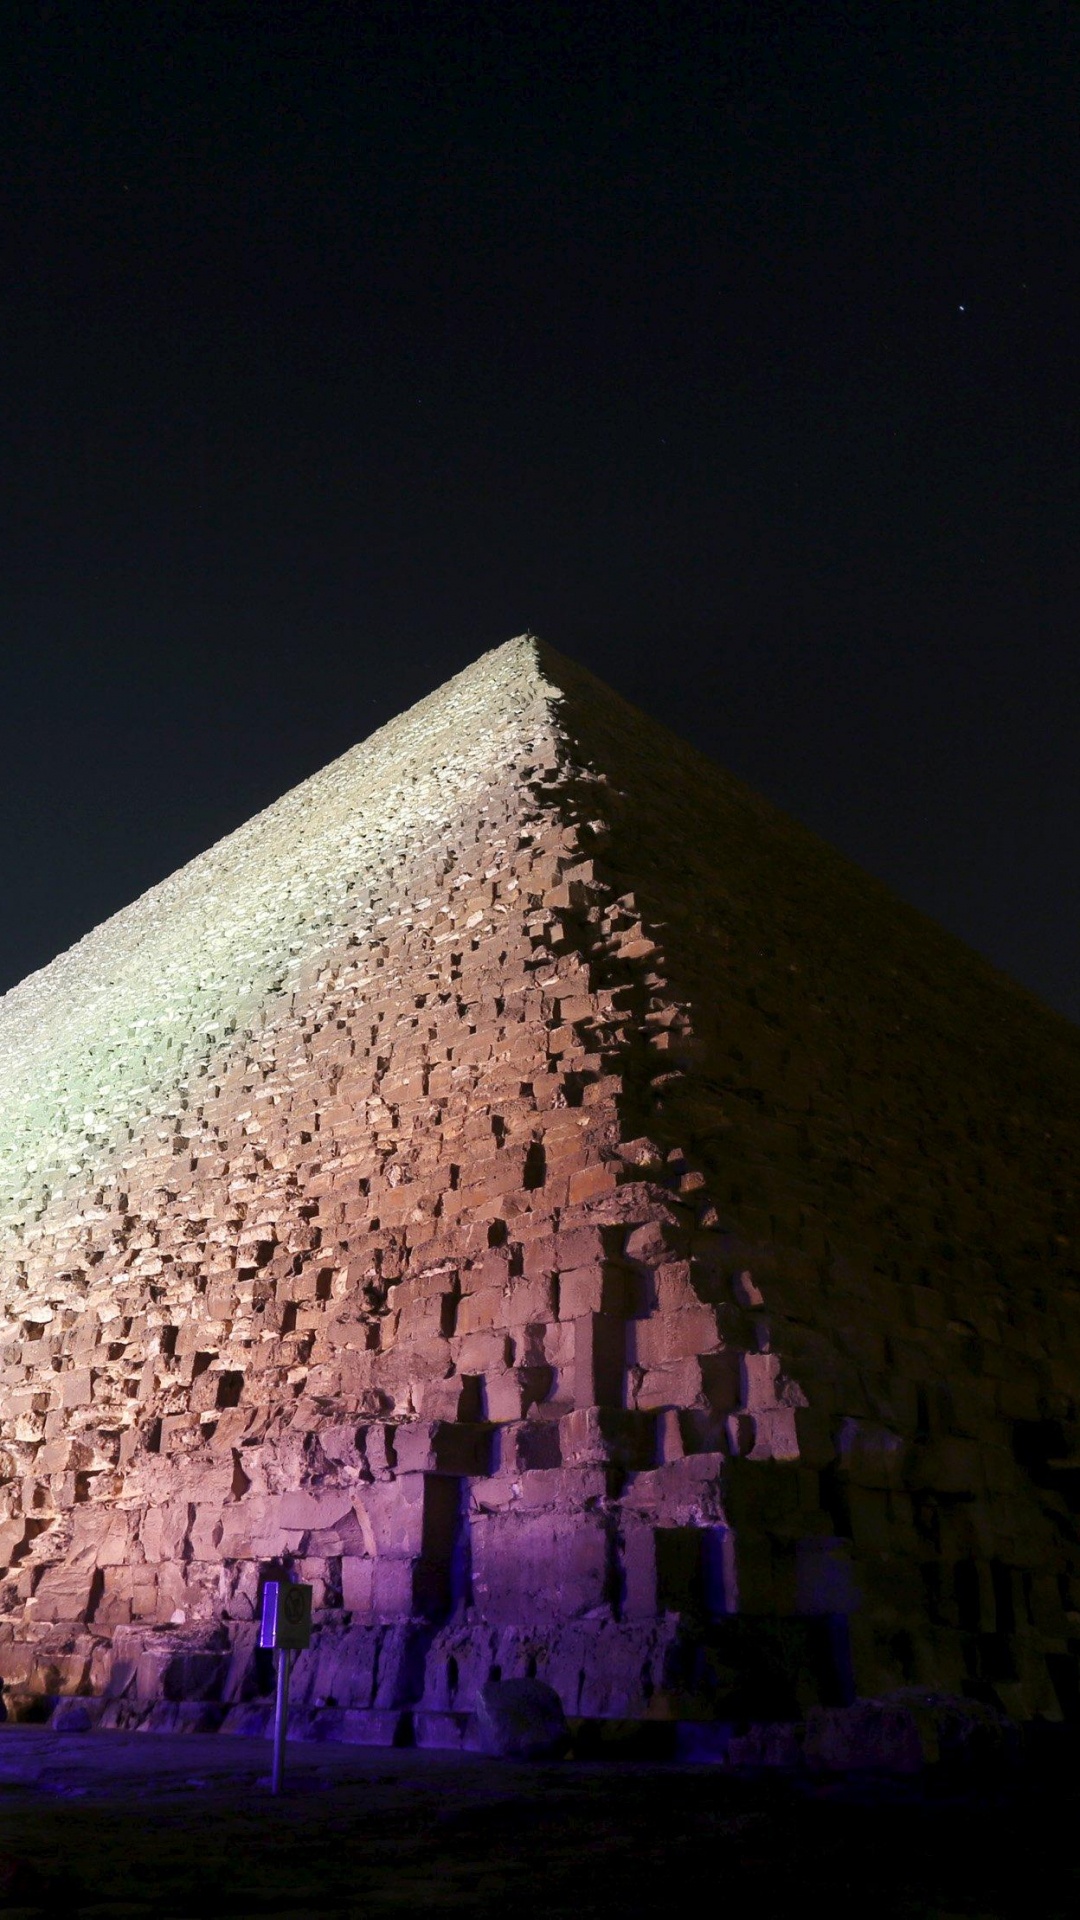 金字塔, 埃及金字塔, 里程碑, 纪念碑, 三角形 壁纸 1080x1920 允许